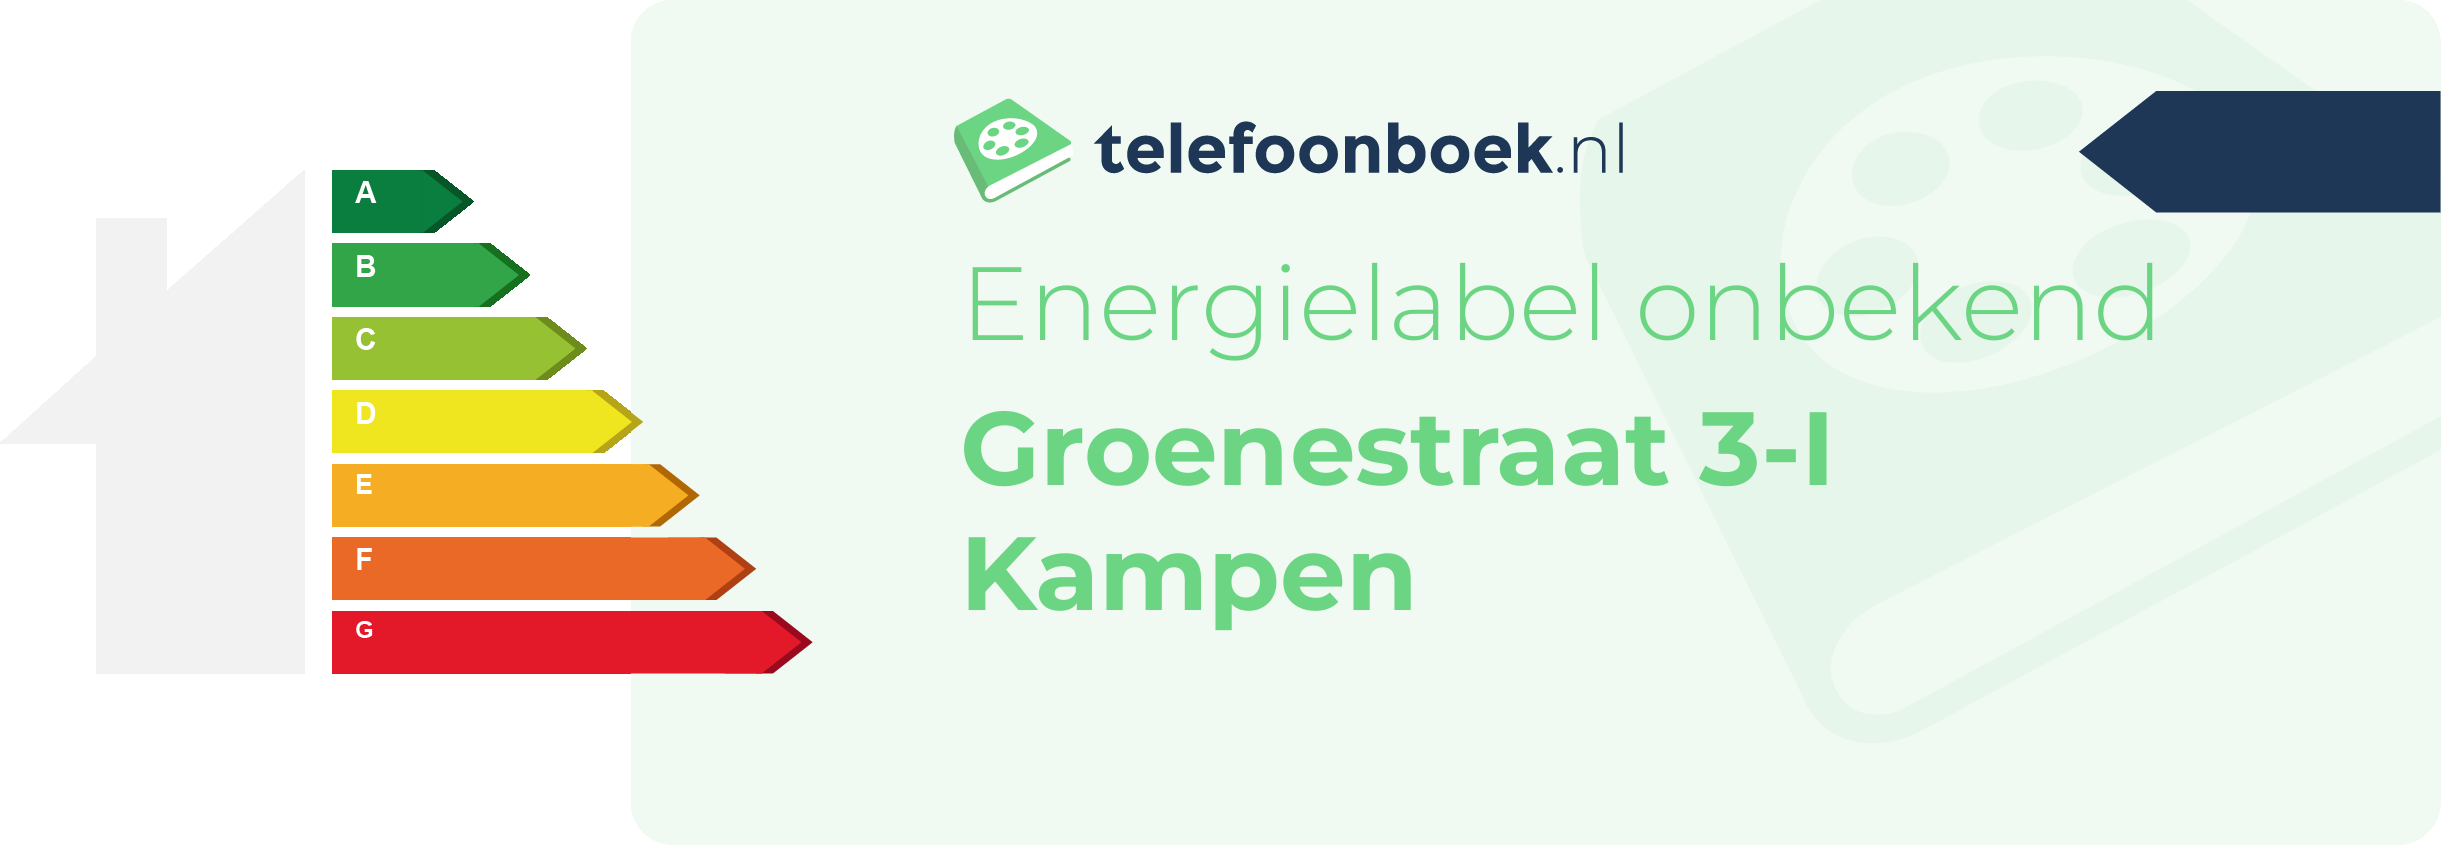 Energielabel Groenestraat 3-I Kampen